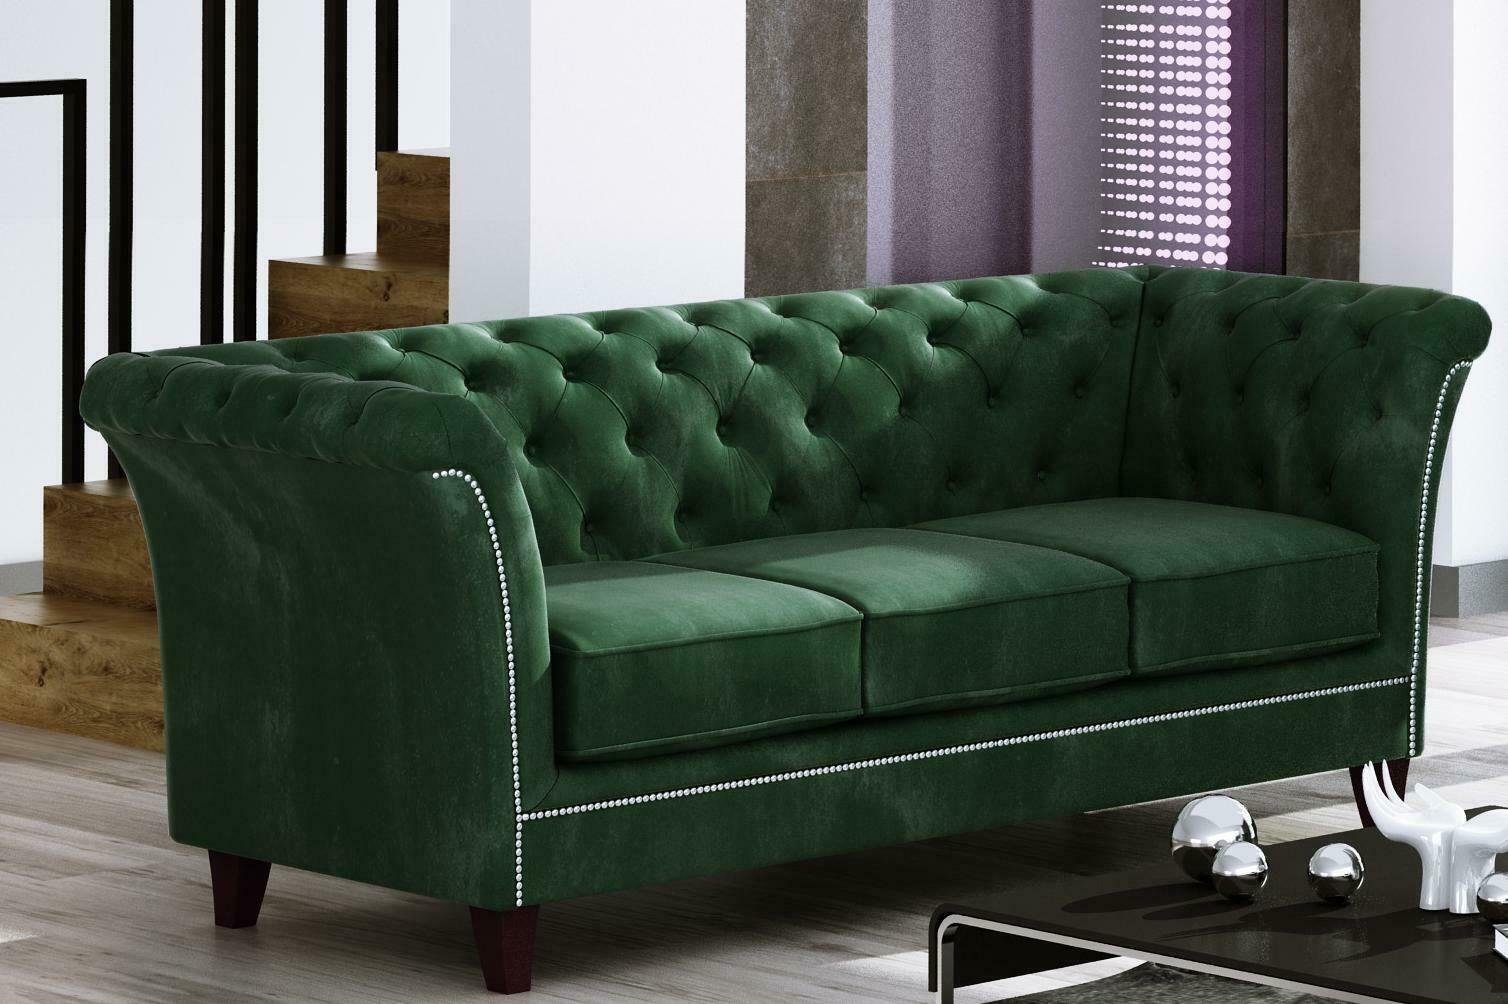 JVmoebel Sofa Grüner Dreisitzer Chesterfield Möbel Luxus 3-Sitzer Couch Edel Neu, Made in Europe Hellgrün